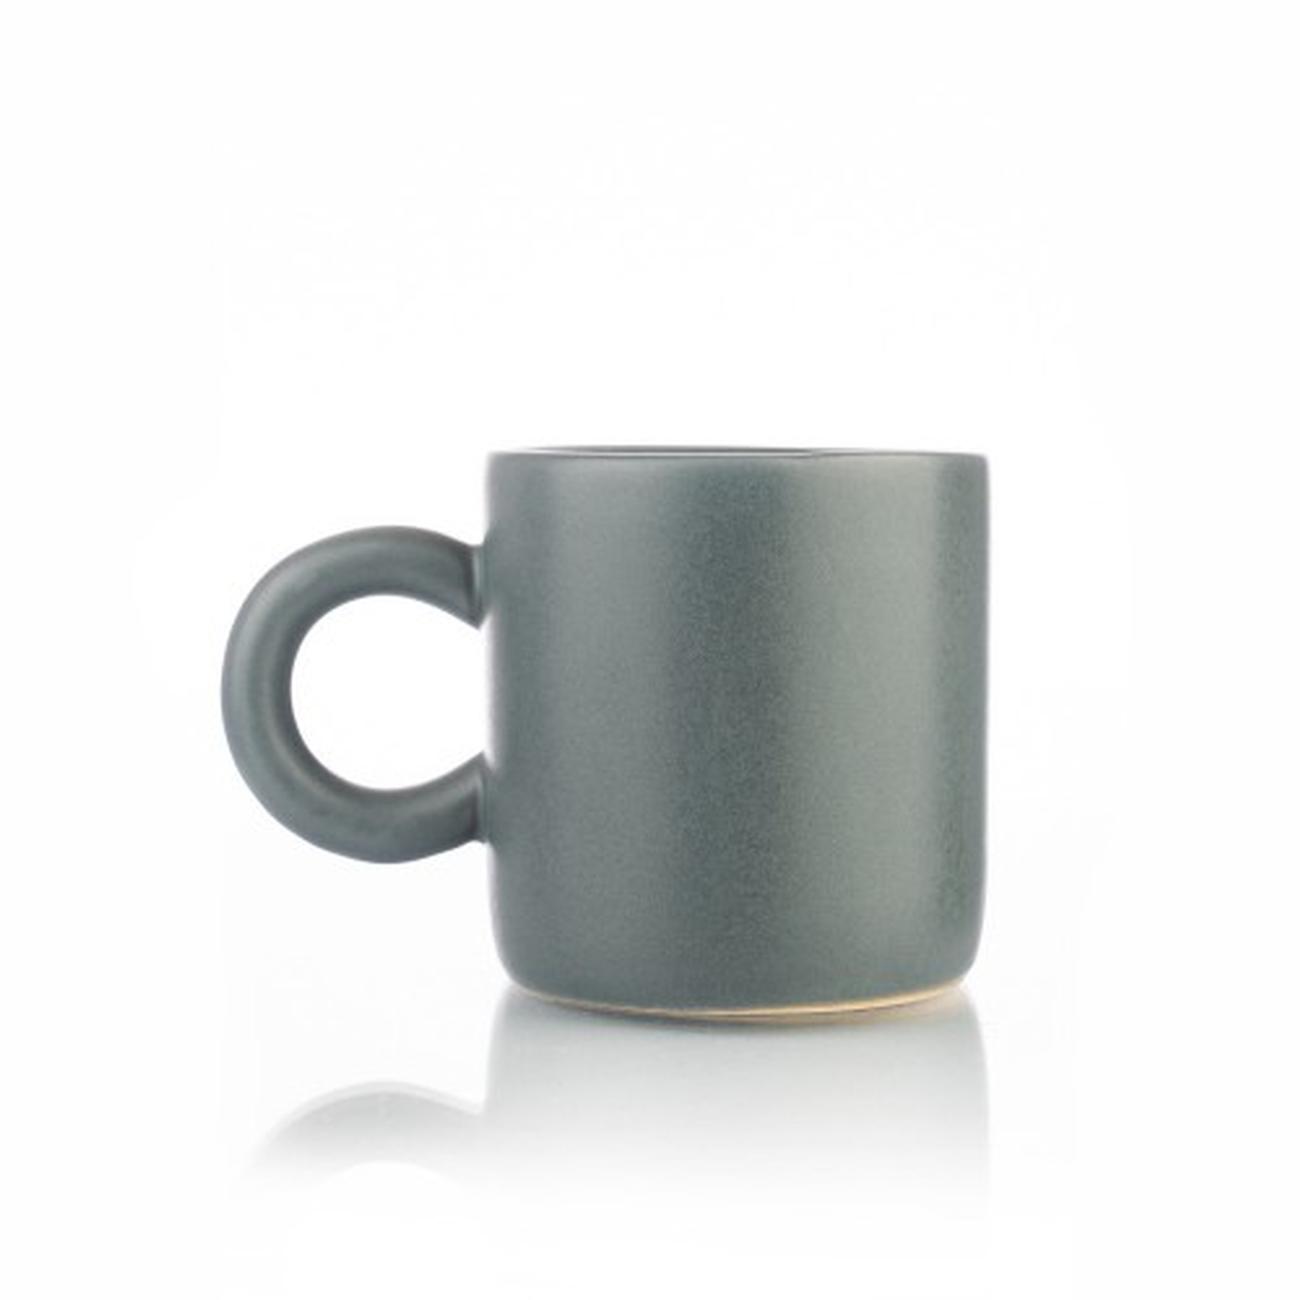 siip-matt-espresso-w-round-grey-handle - Siip Espresso Cup- Matte Grey With Round Handle